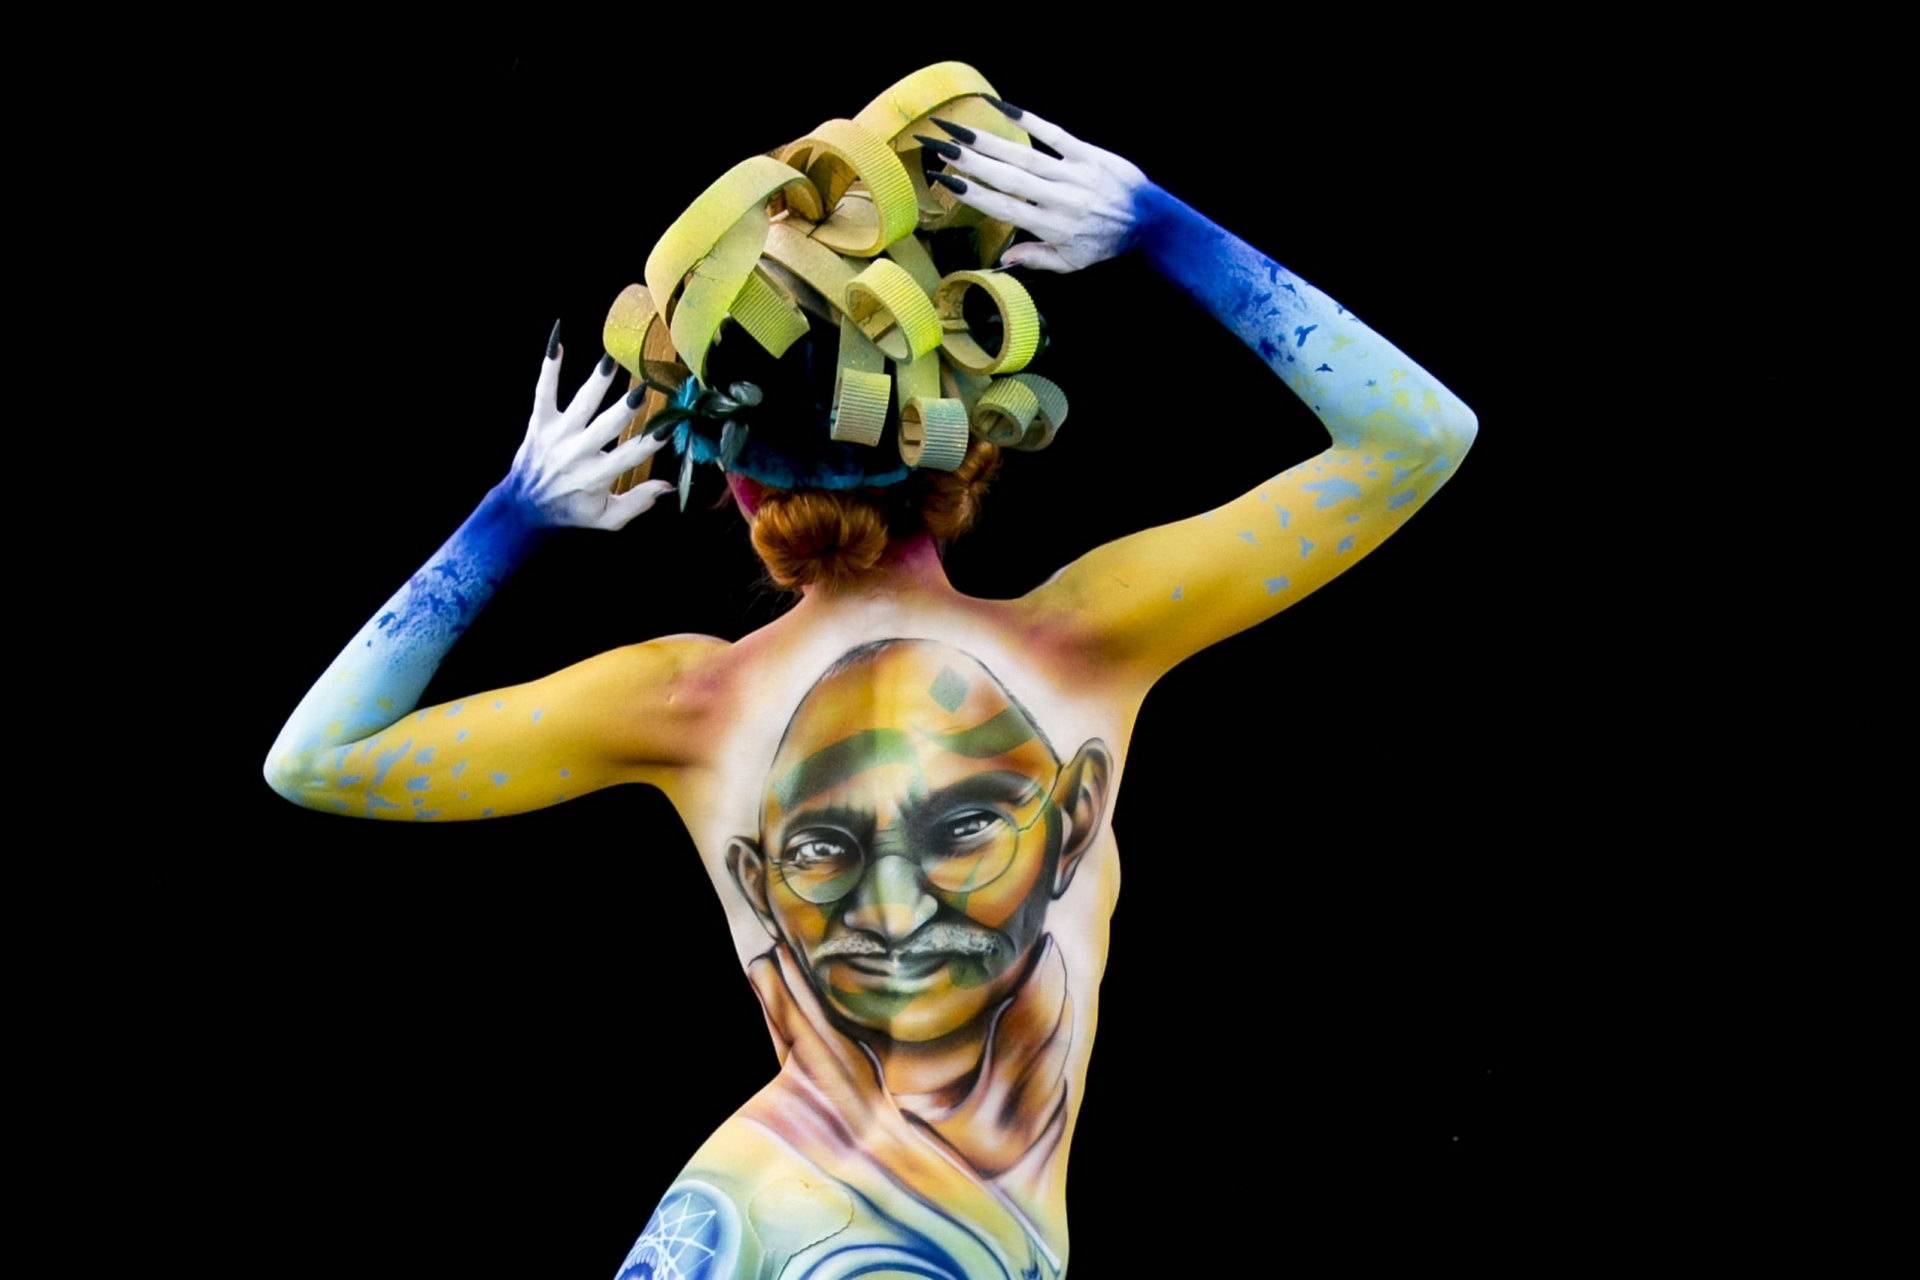 Боди-арт: поразительные примеры живописи на человеческом теле